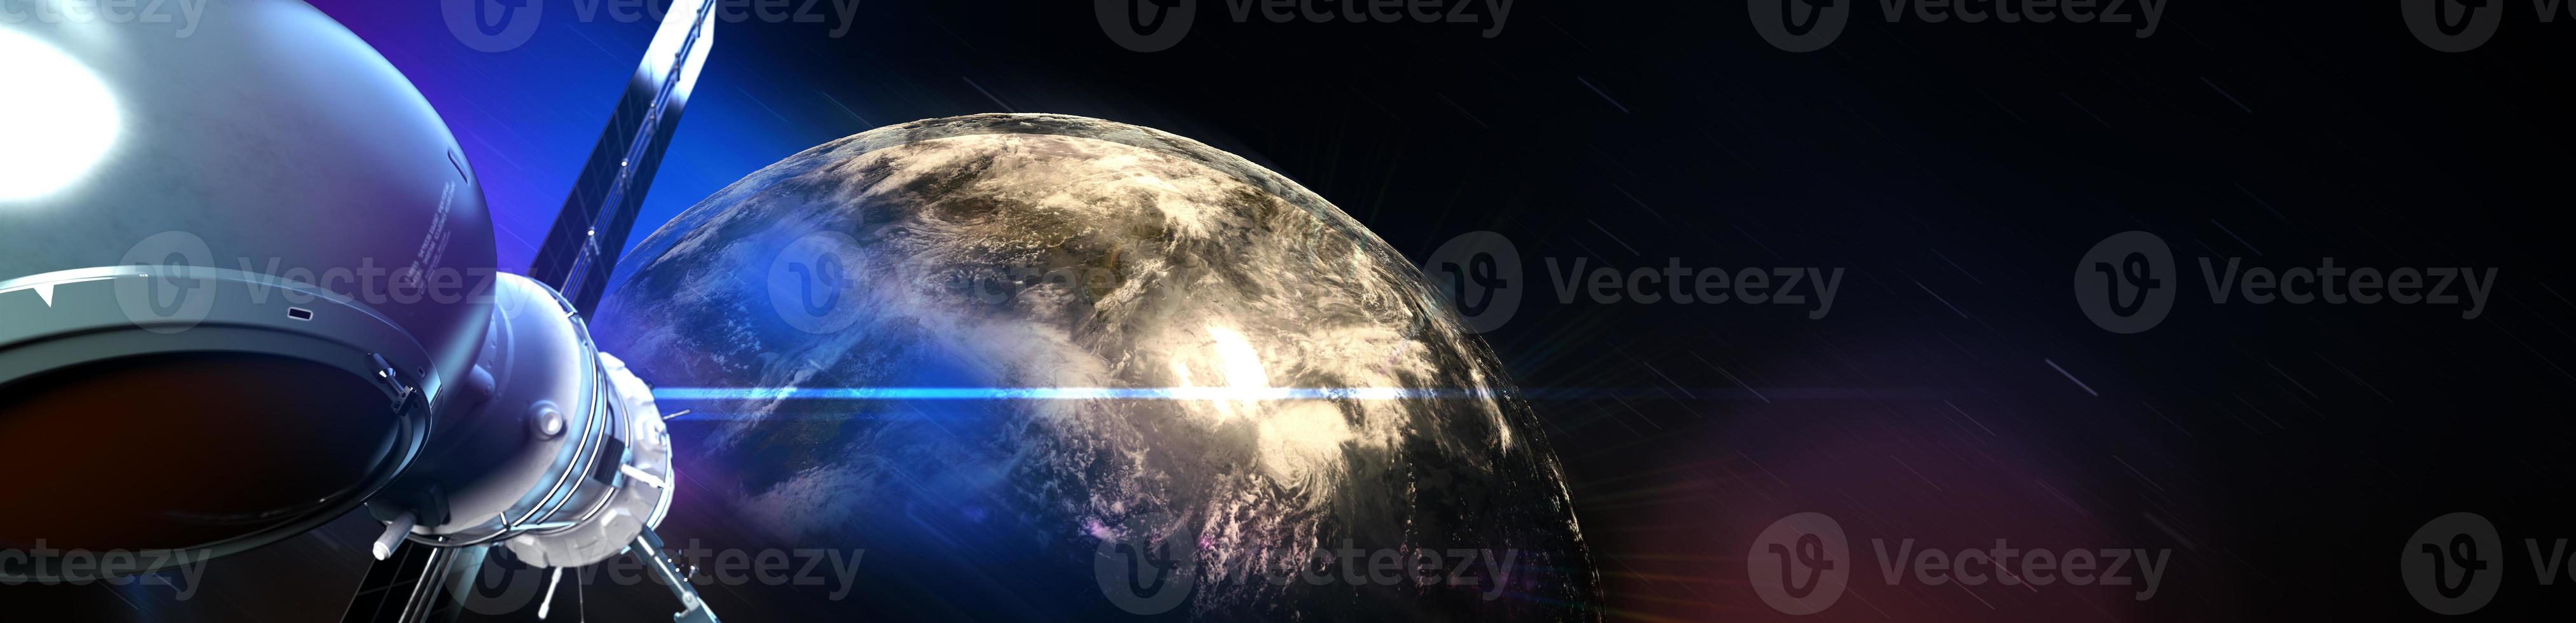 sistema global de satélites. satélite de comunicação no fundo do espaço futurista foto